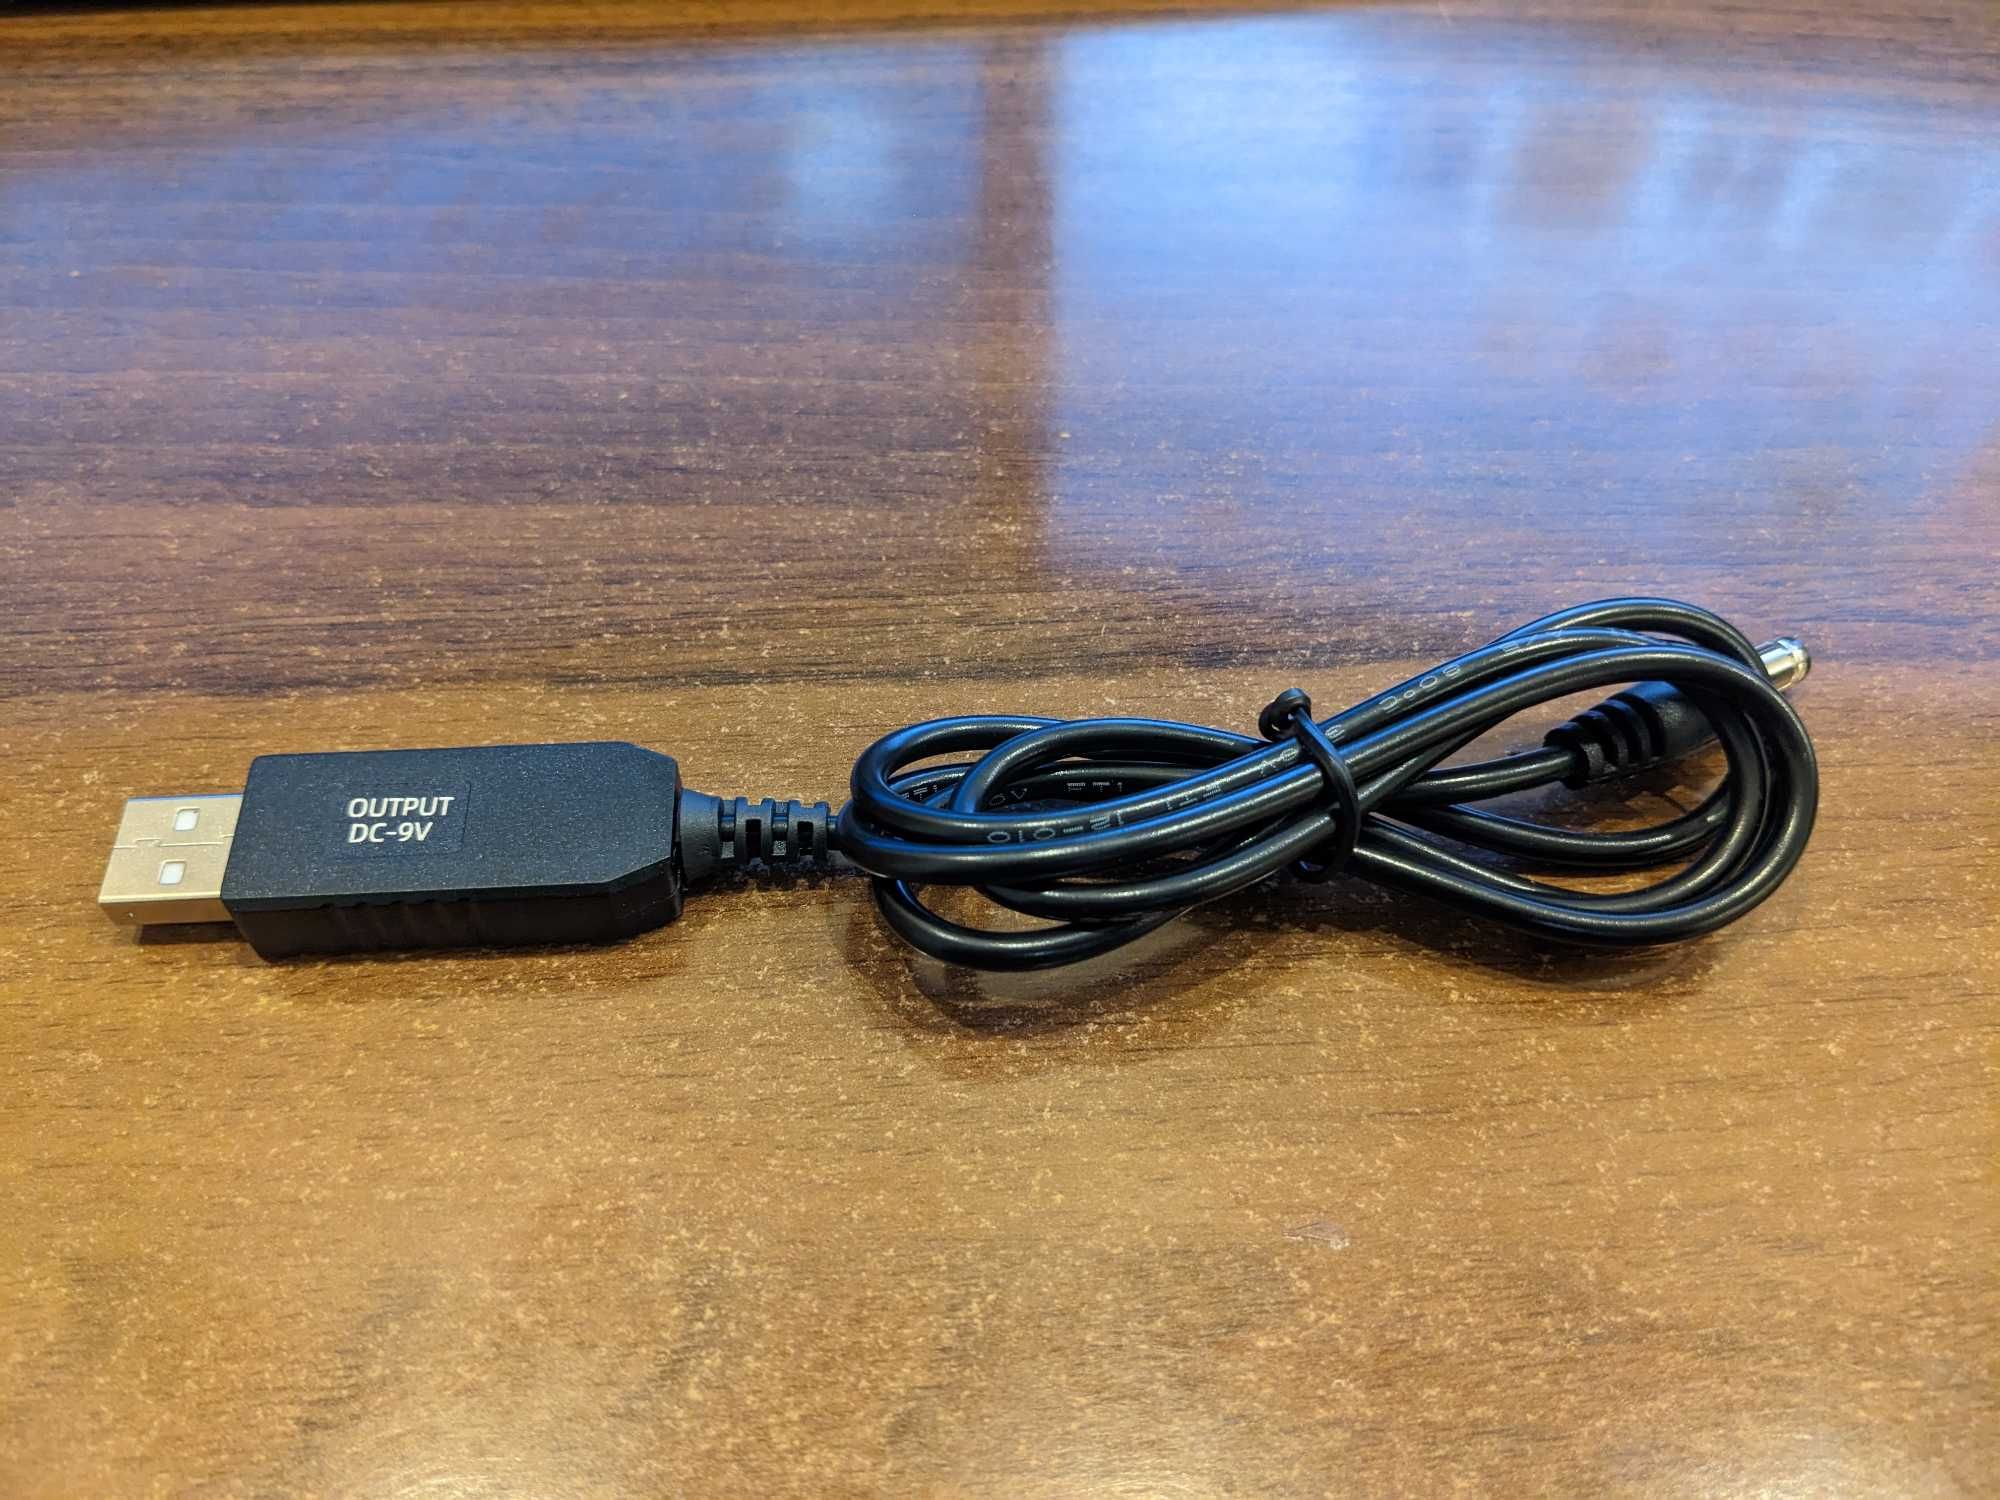 USB кабель для живлення WiFi роутера 5.5*2.1мм - 5, 9, 12V